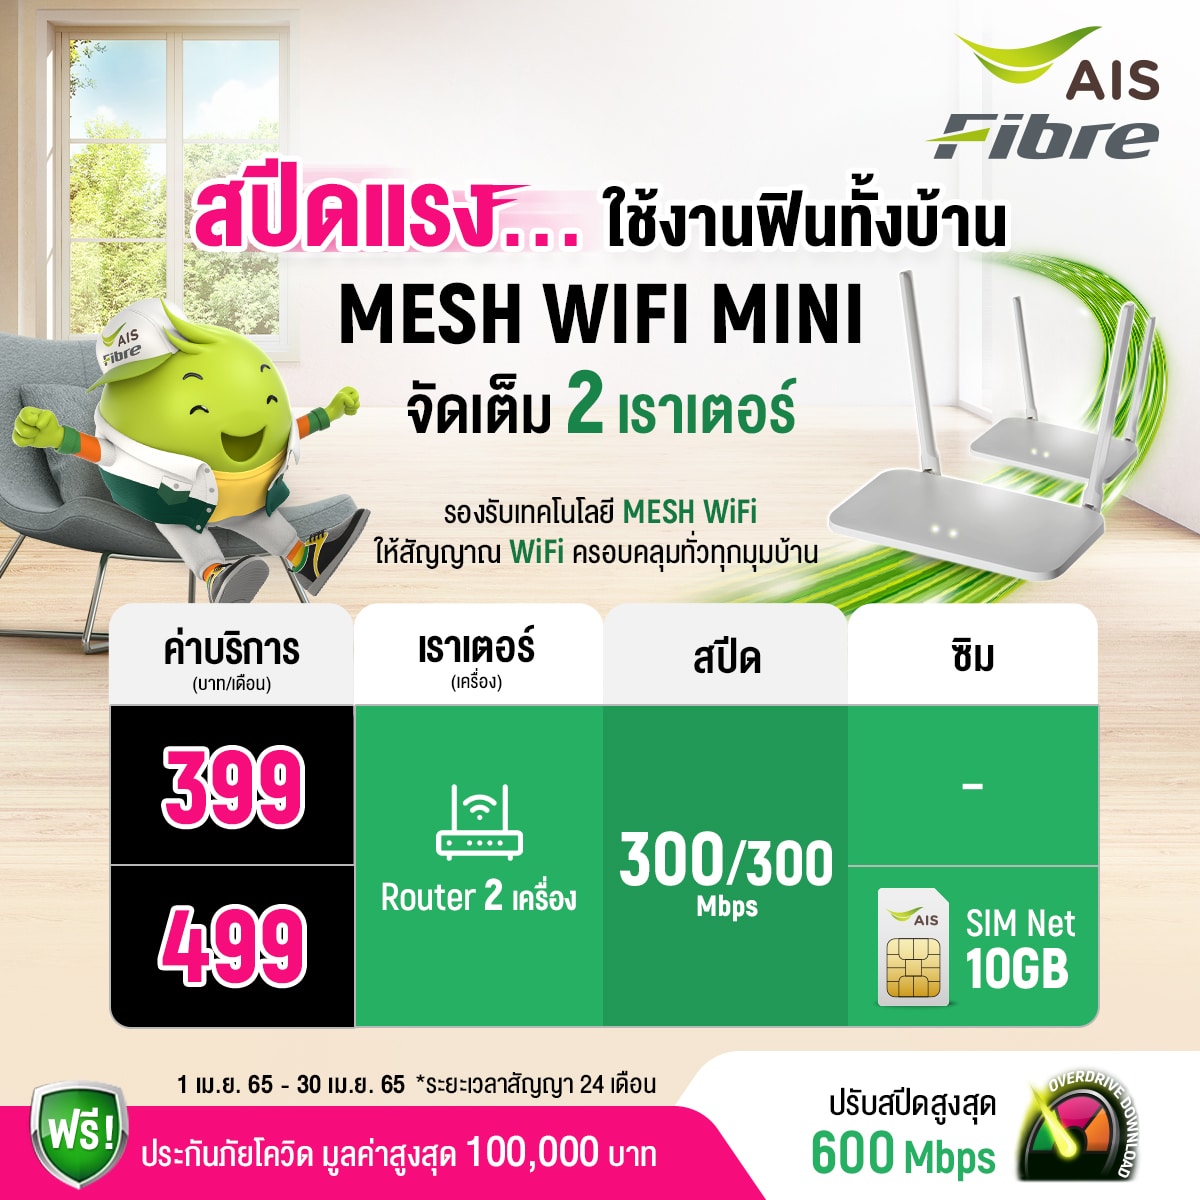 AIS Fiber mesh wifi mini